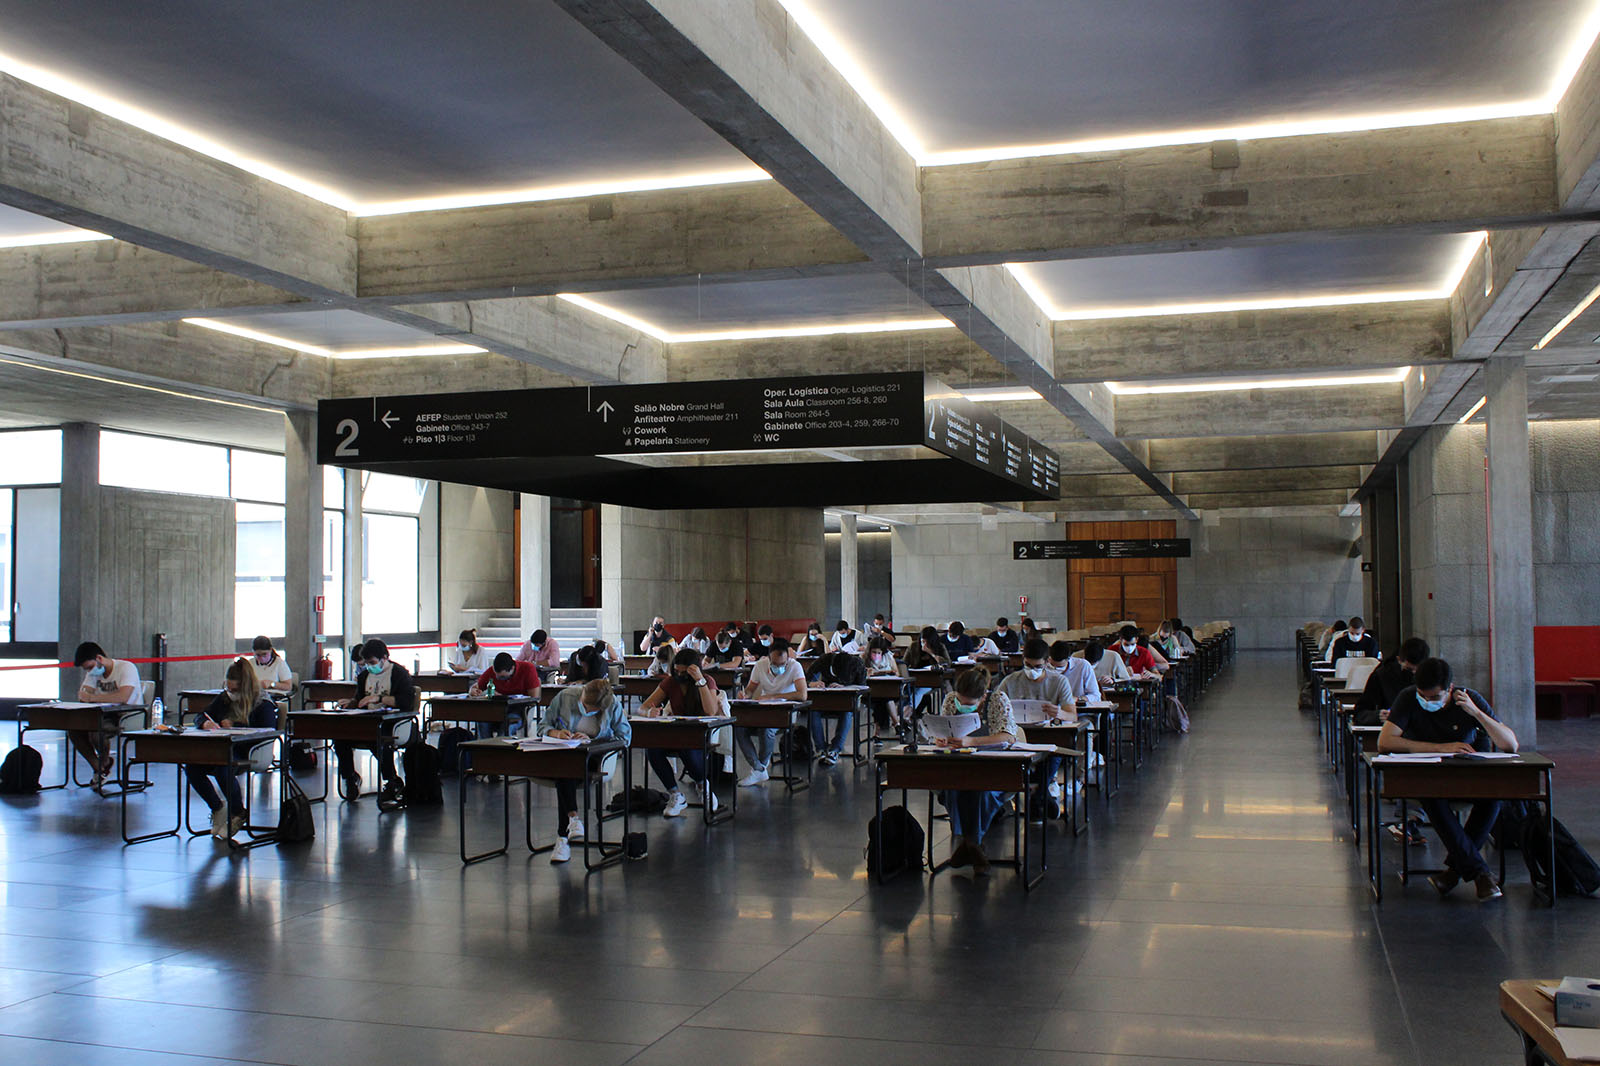 Exames presenciais anunciam regresso à "normalidade" na U.Porto